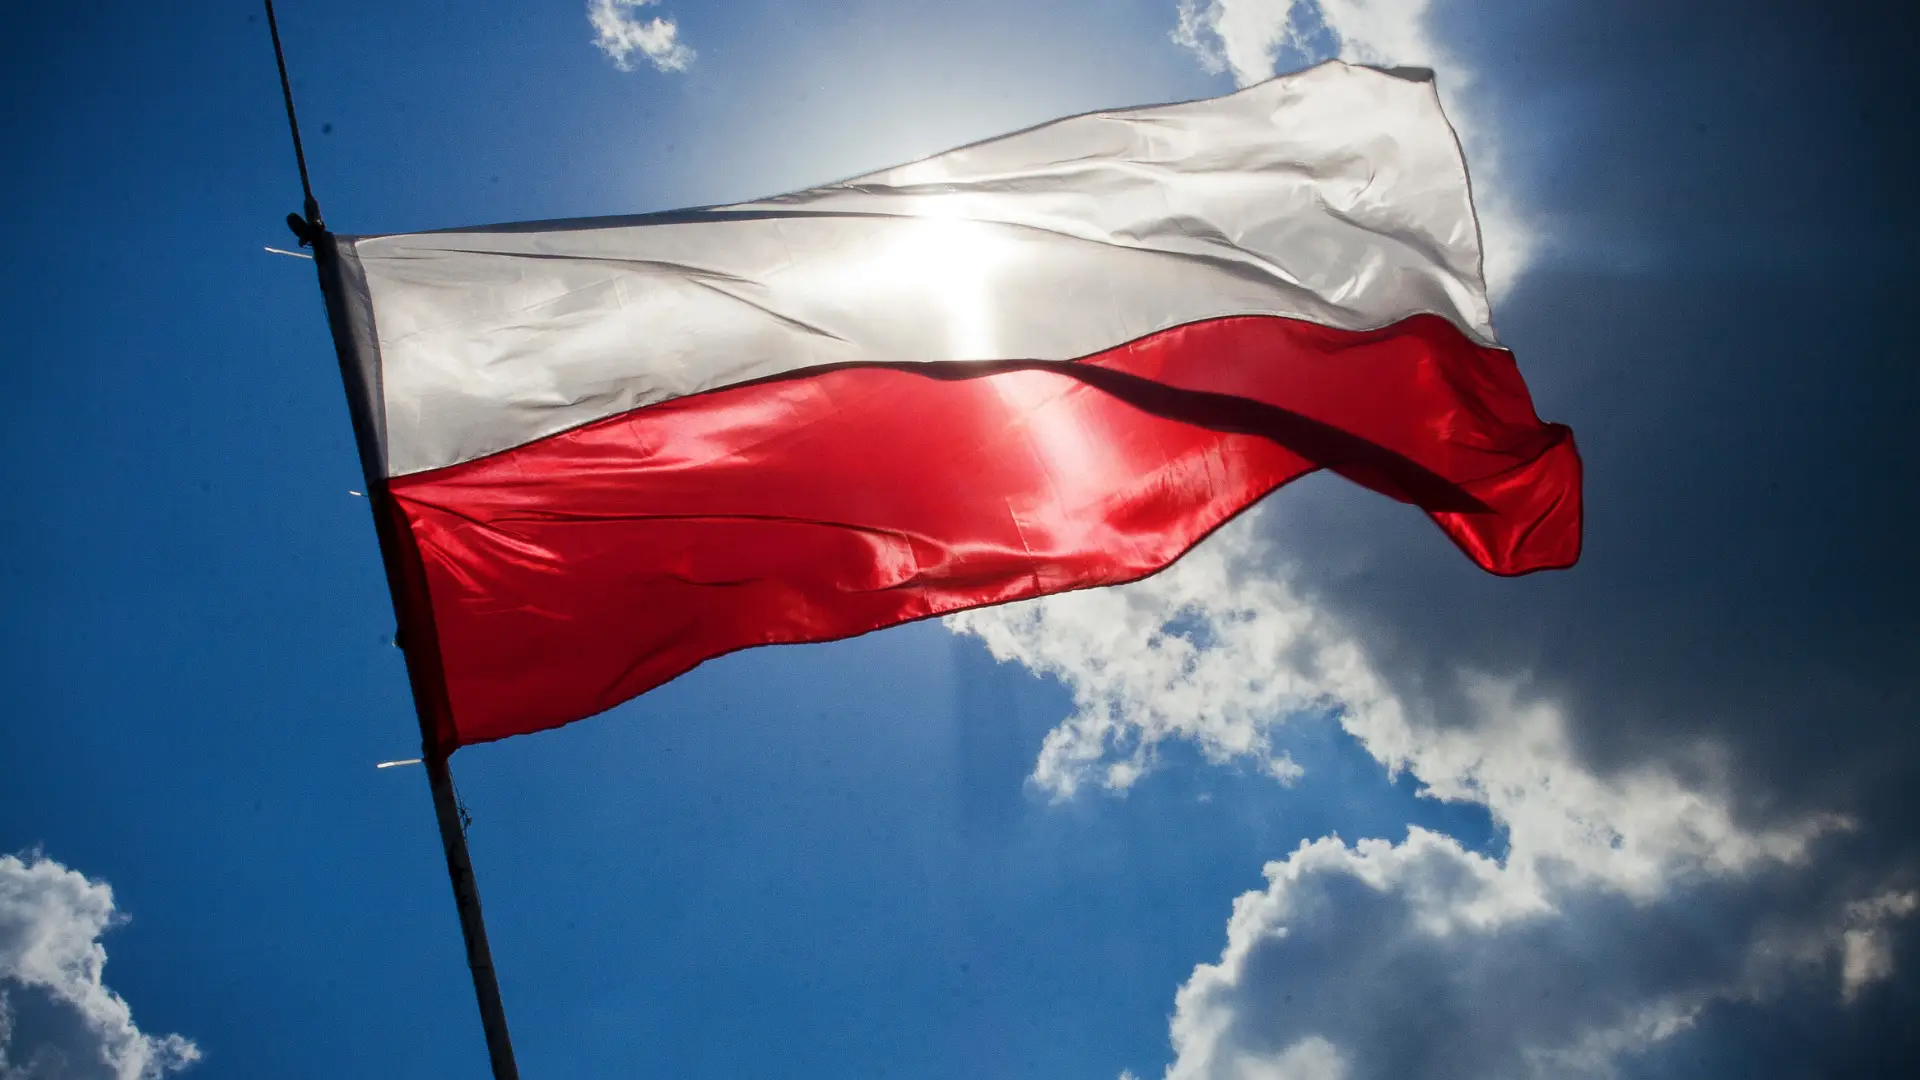 Polónia pede indemnização bilionária à Alemanha